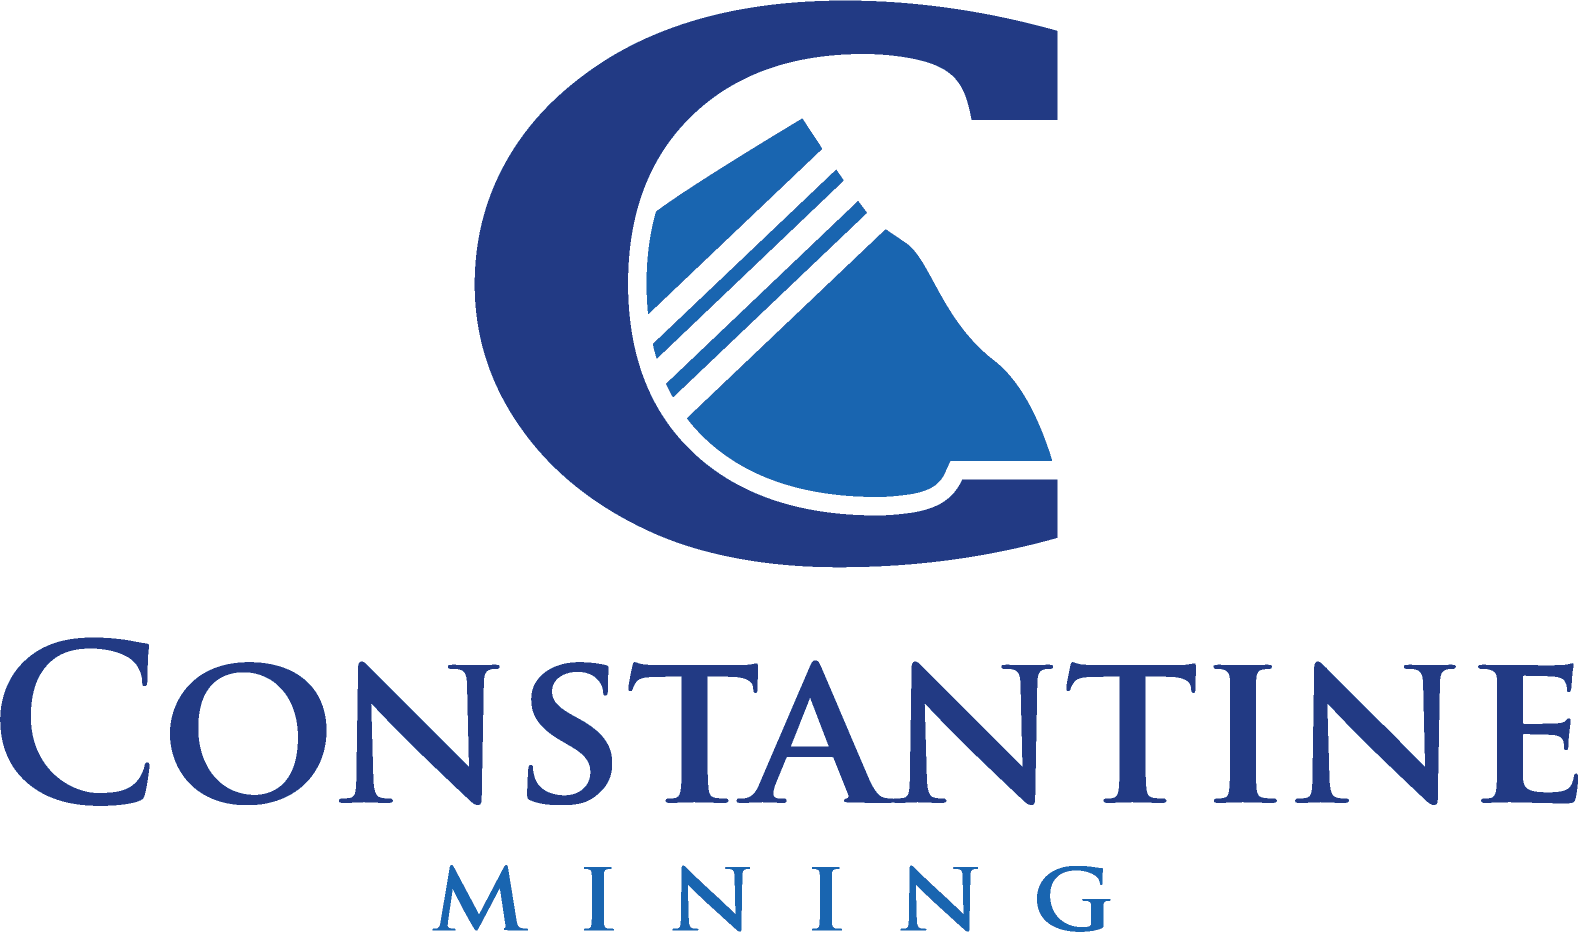 Constantine Metal Resources